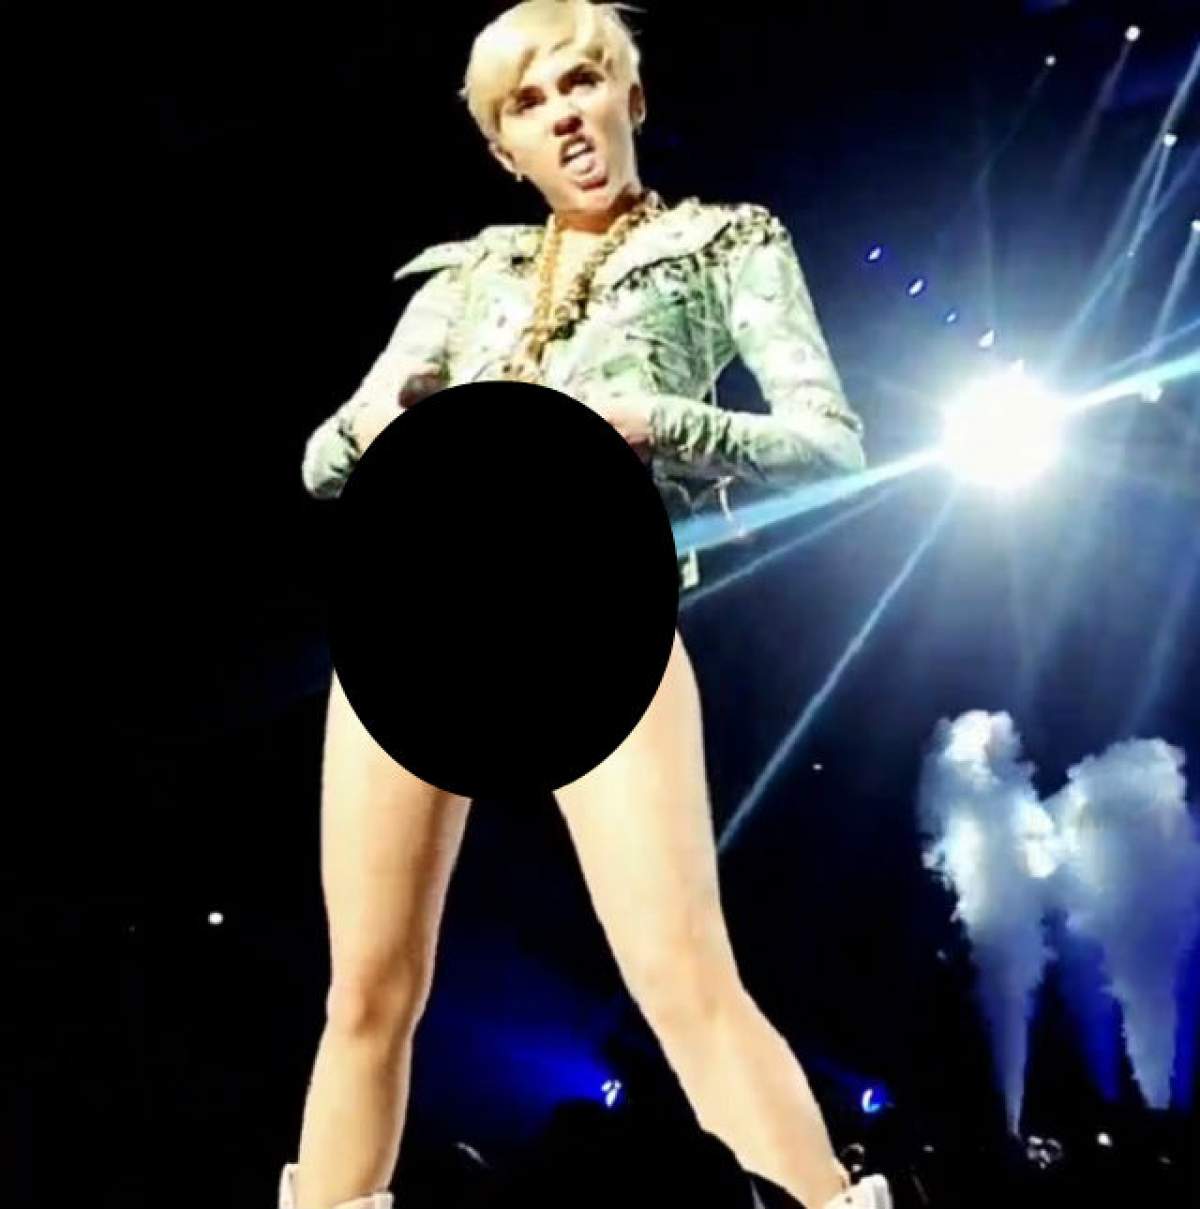 VIDEO Miley Cyrus a atins culmile obscenităţii! Şi-a arătat zonele intime cu cele mai perverse gesturi!